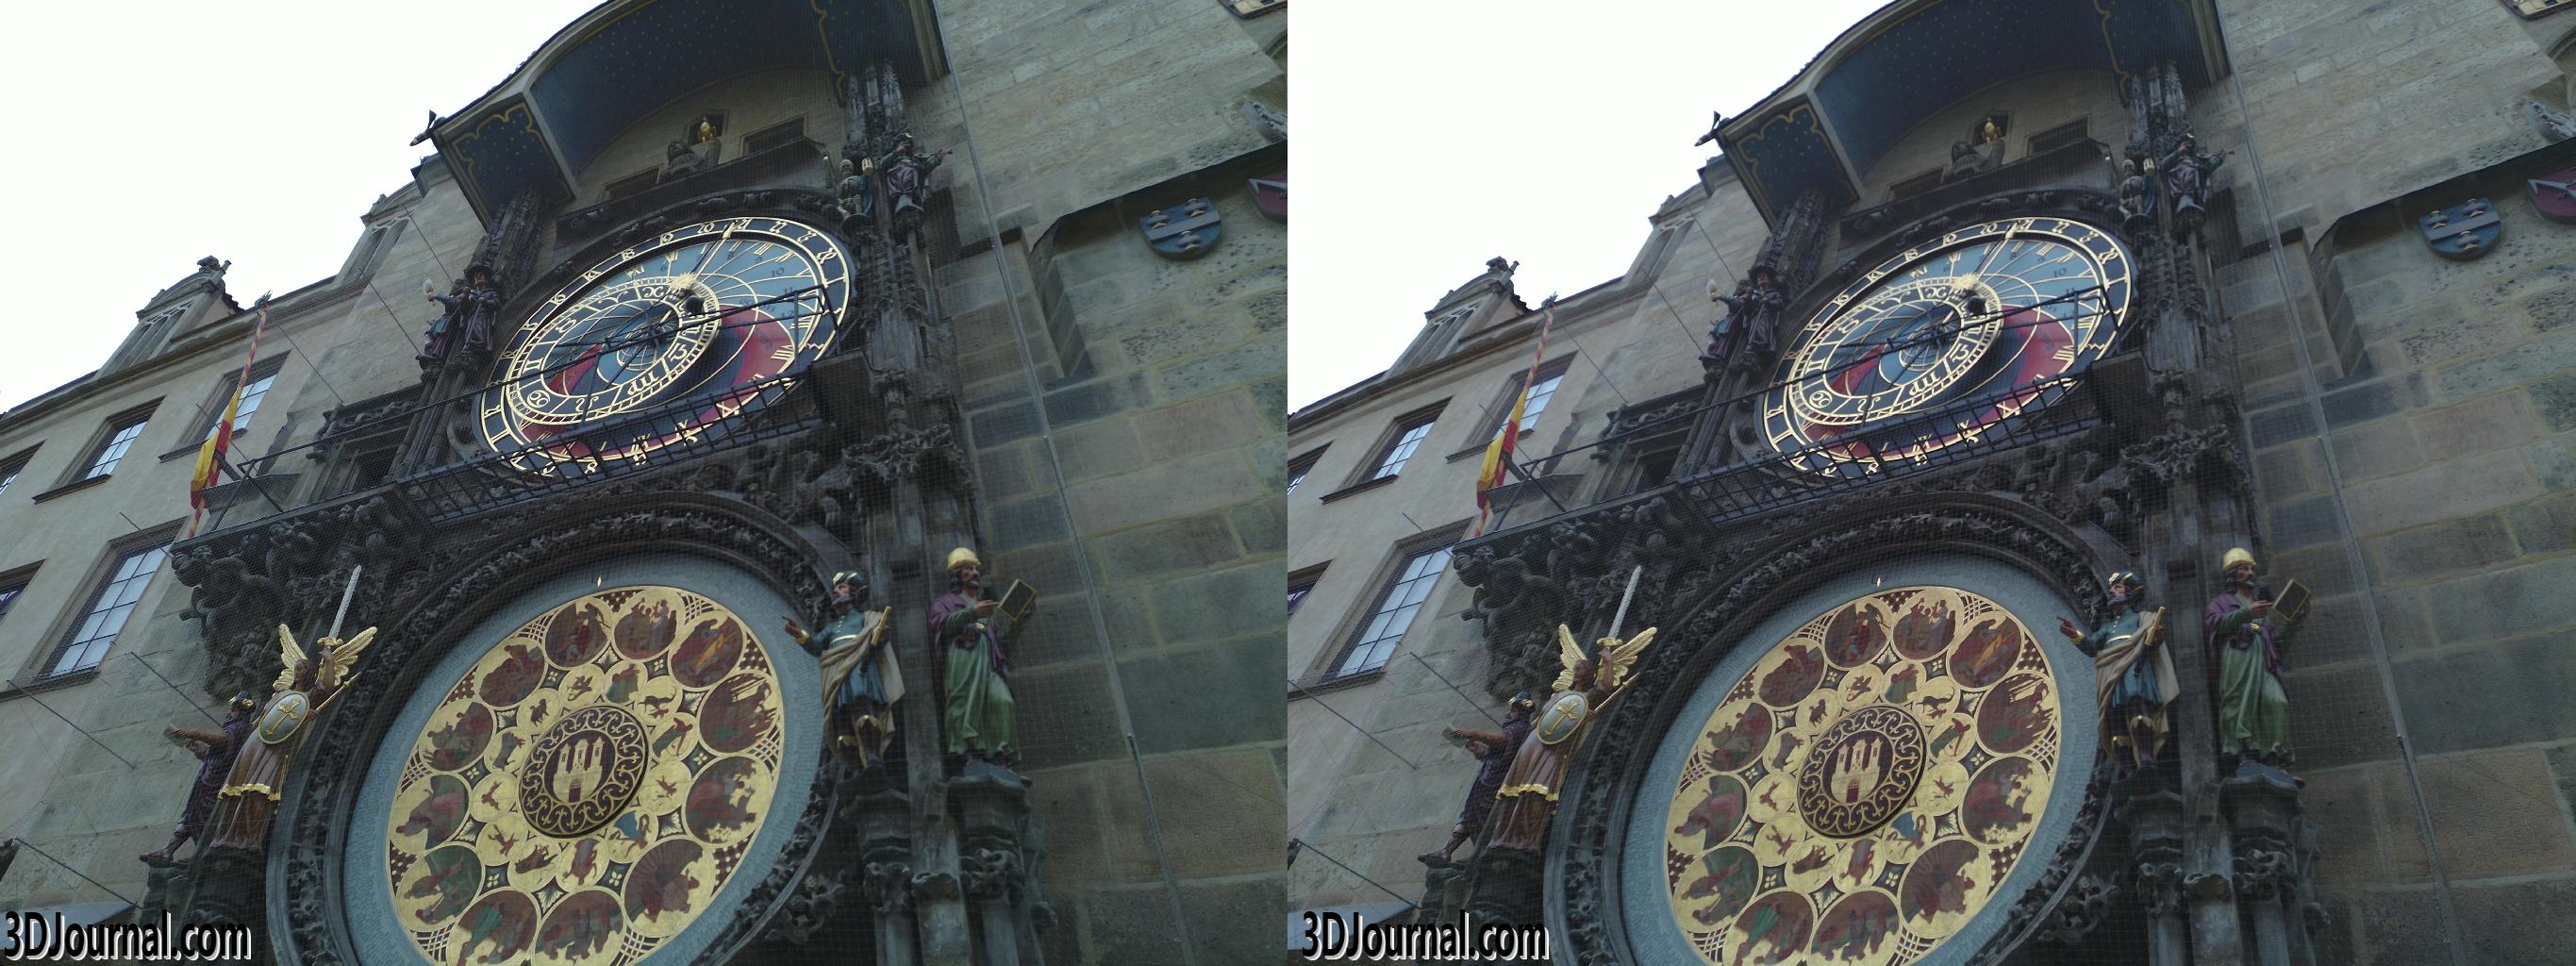 Staroměstské náměstí v Praze - Staroměstský orloj